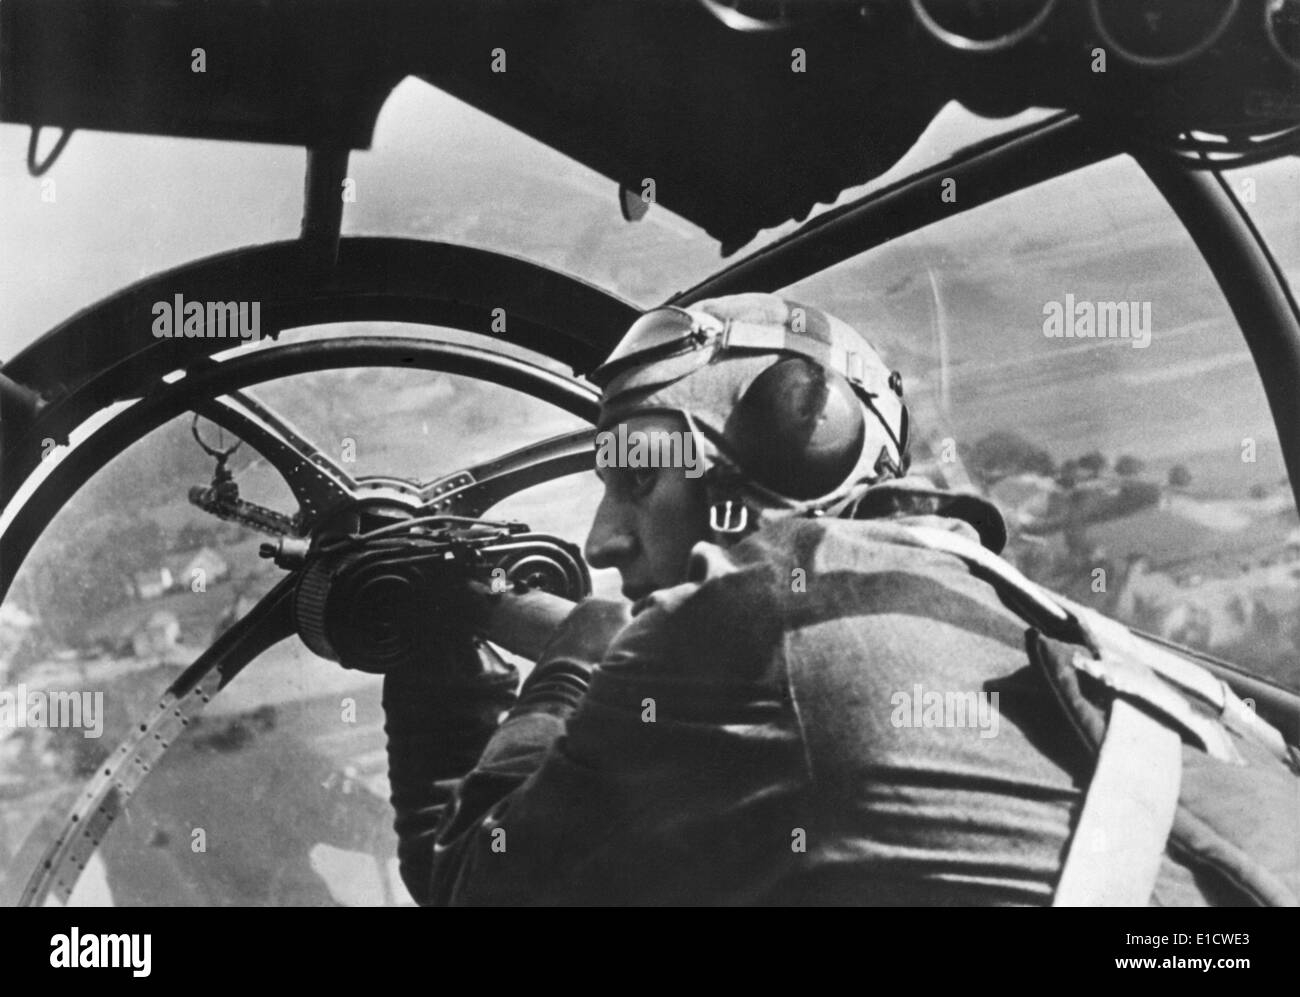 Mitrailleur allemand dans un avion au cours de premiers jours de la Seconde Guerre mondiale 2 en Pologne. Le 16 septembre 1939. (BSLOC 2014 6 5) Banque D'Images